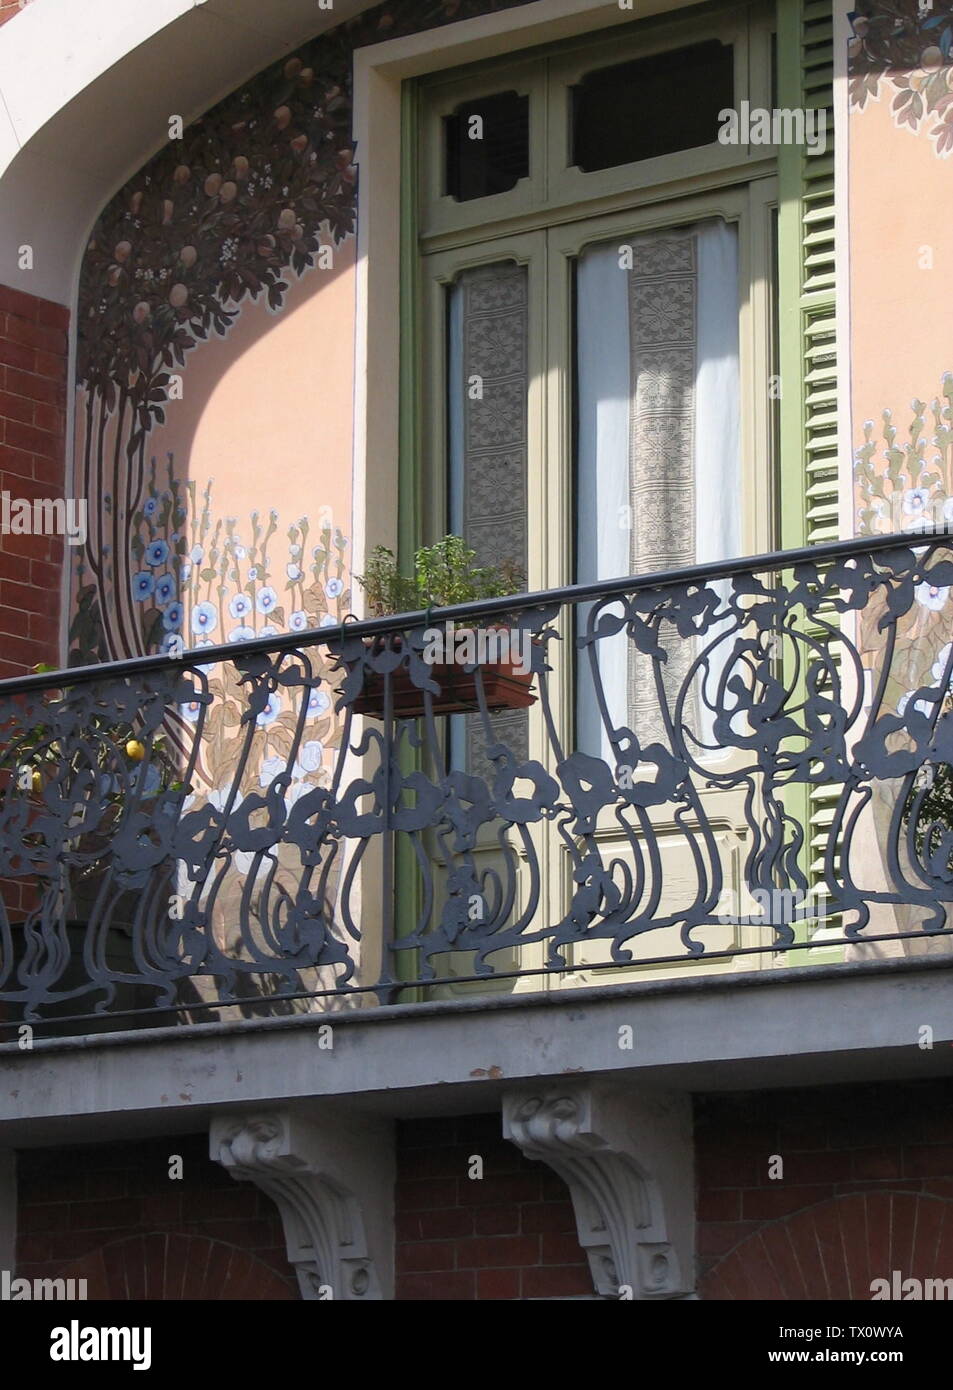 Dettaglio del balcone in stile liberty della Casa Arri, ad Asti.; Own work; Faberh; Stock Photo